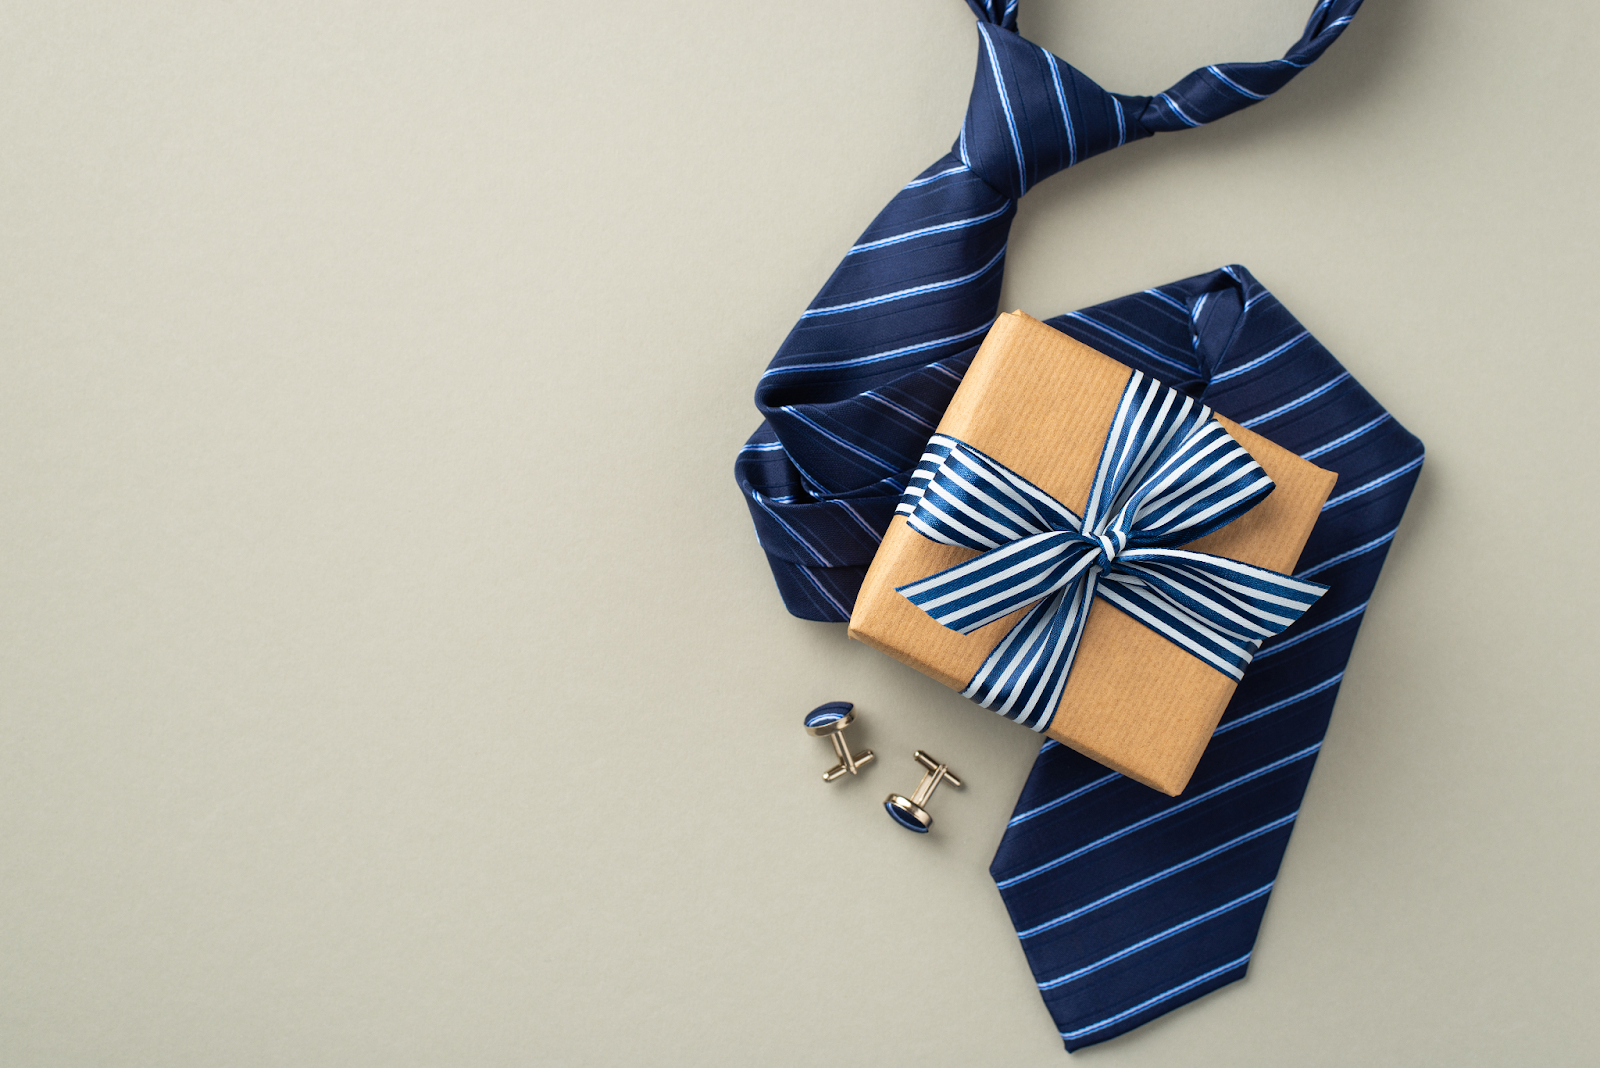 高級ブランドのネクタイをプレゼントするときの注意点